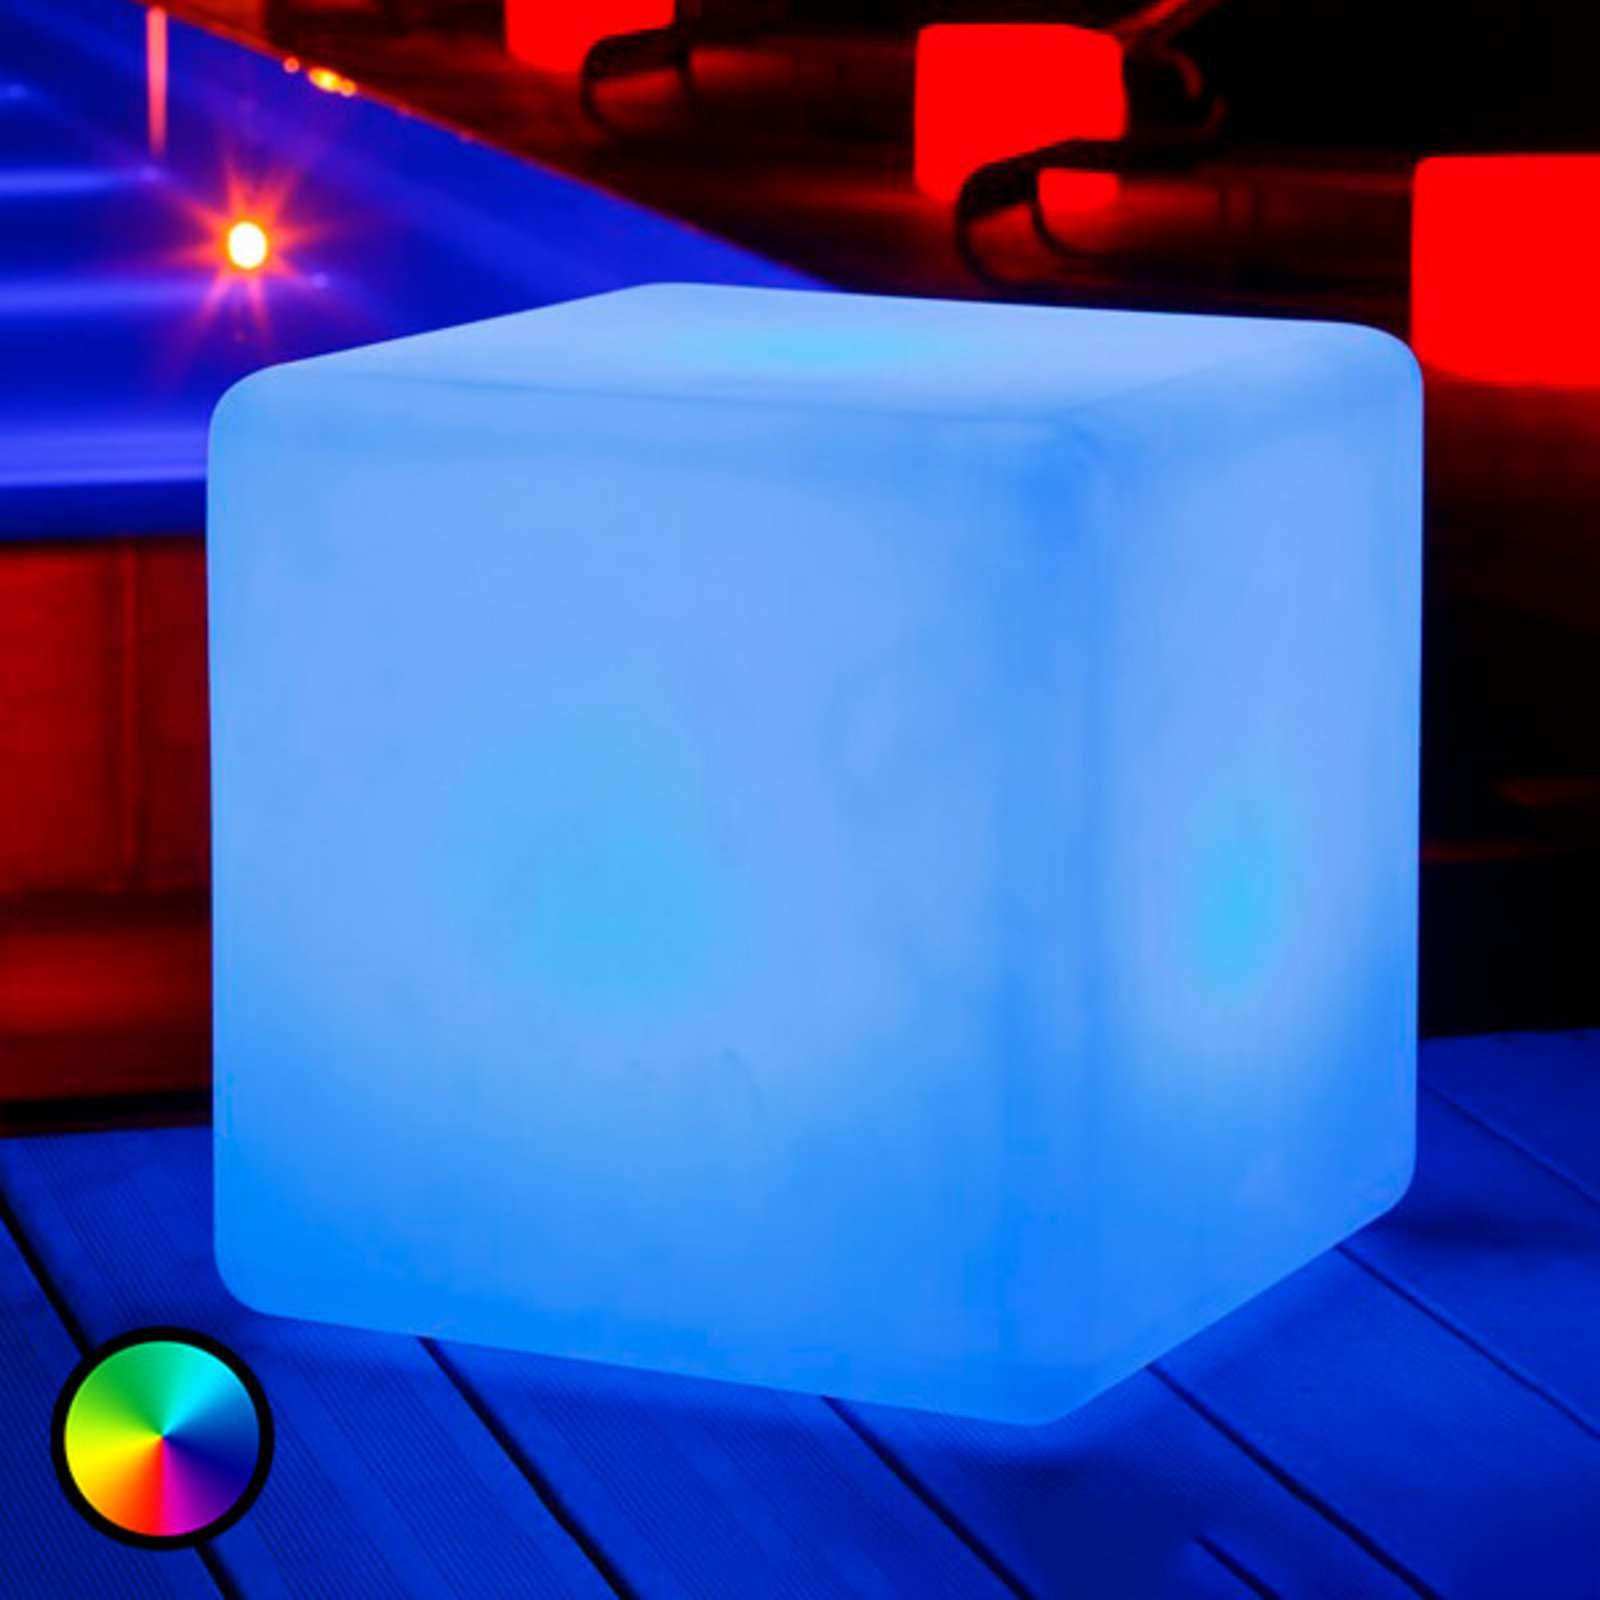 Big Cube luminous cube, controllable via app